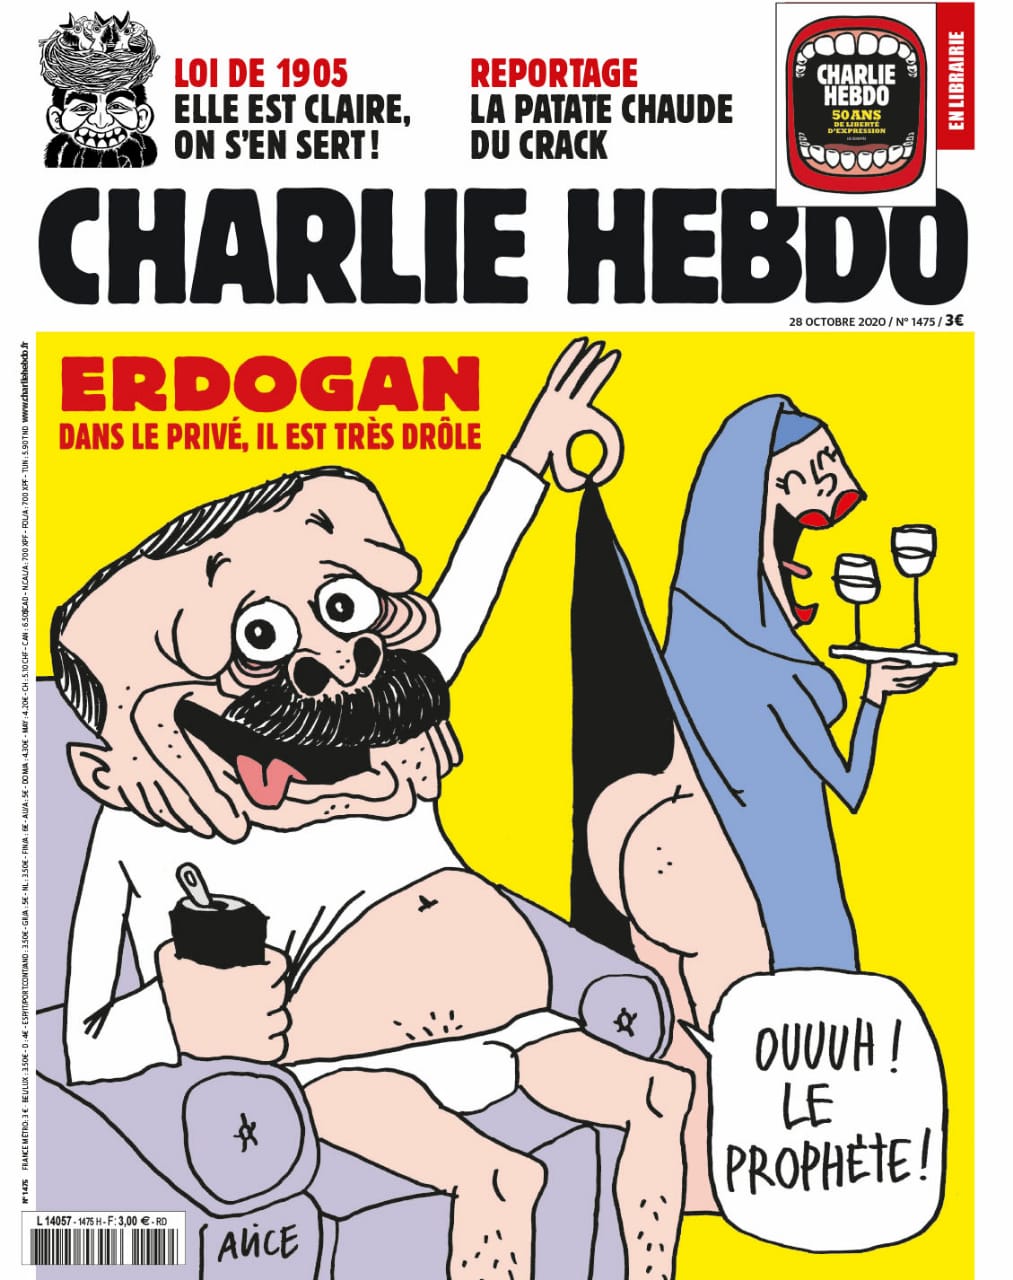 صحيفة شارلي إيبدو الفرنسية رسوماً كاريكاتيرية للرئيس التركي رجب طيب أردوغان